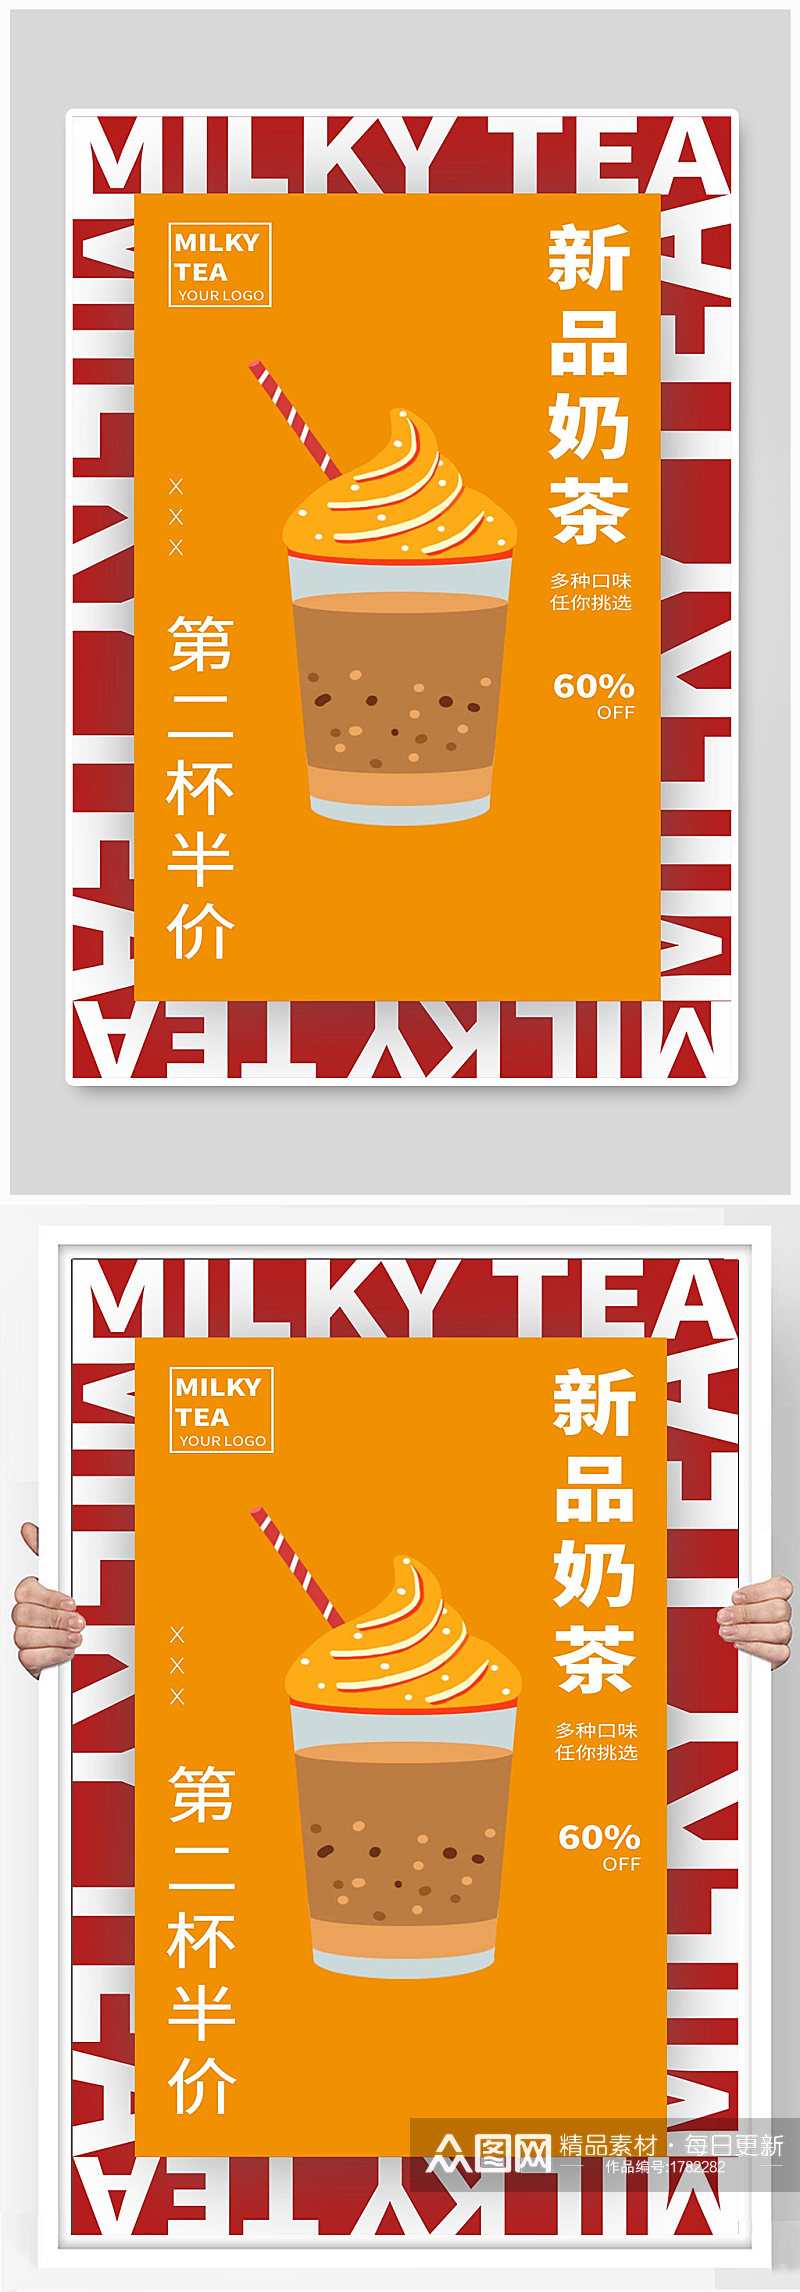 奶茶宣传海报设计素材